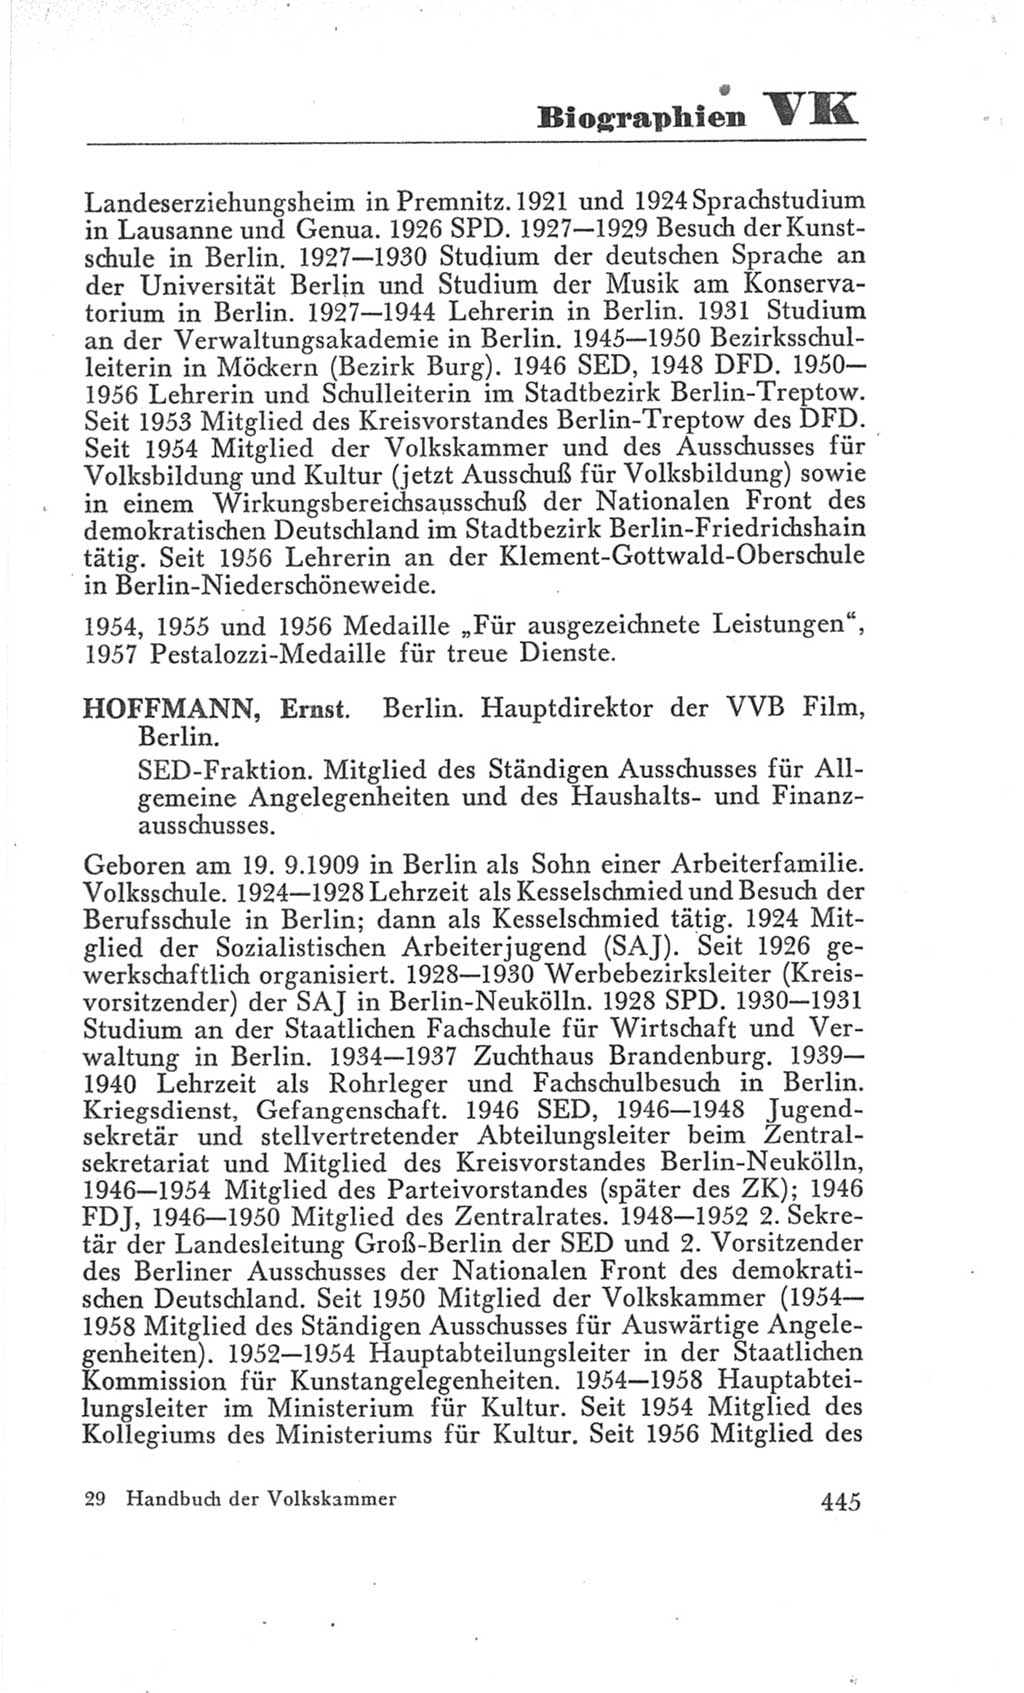 Handbuch der Volkskammer (VK) der Deutschen Demokratischen Republik (DDR), 3. Wahlperiode 1958-1963, Seite 445 (Hdb. VK. DDR 3. WP. 1958-1963, S. 445)